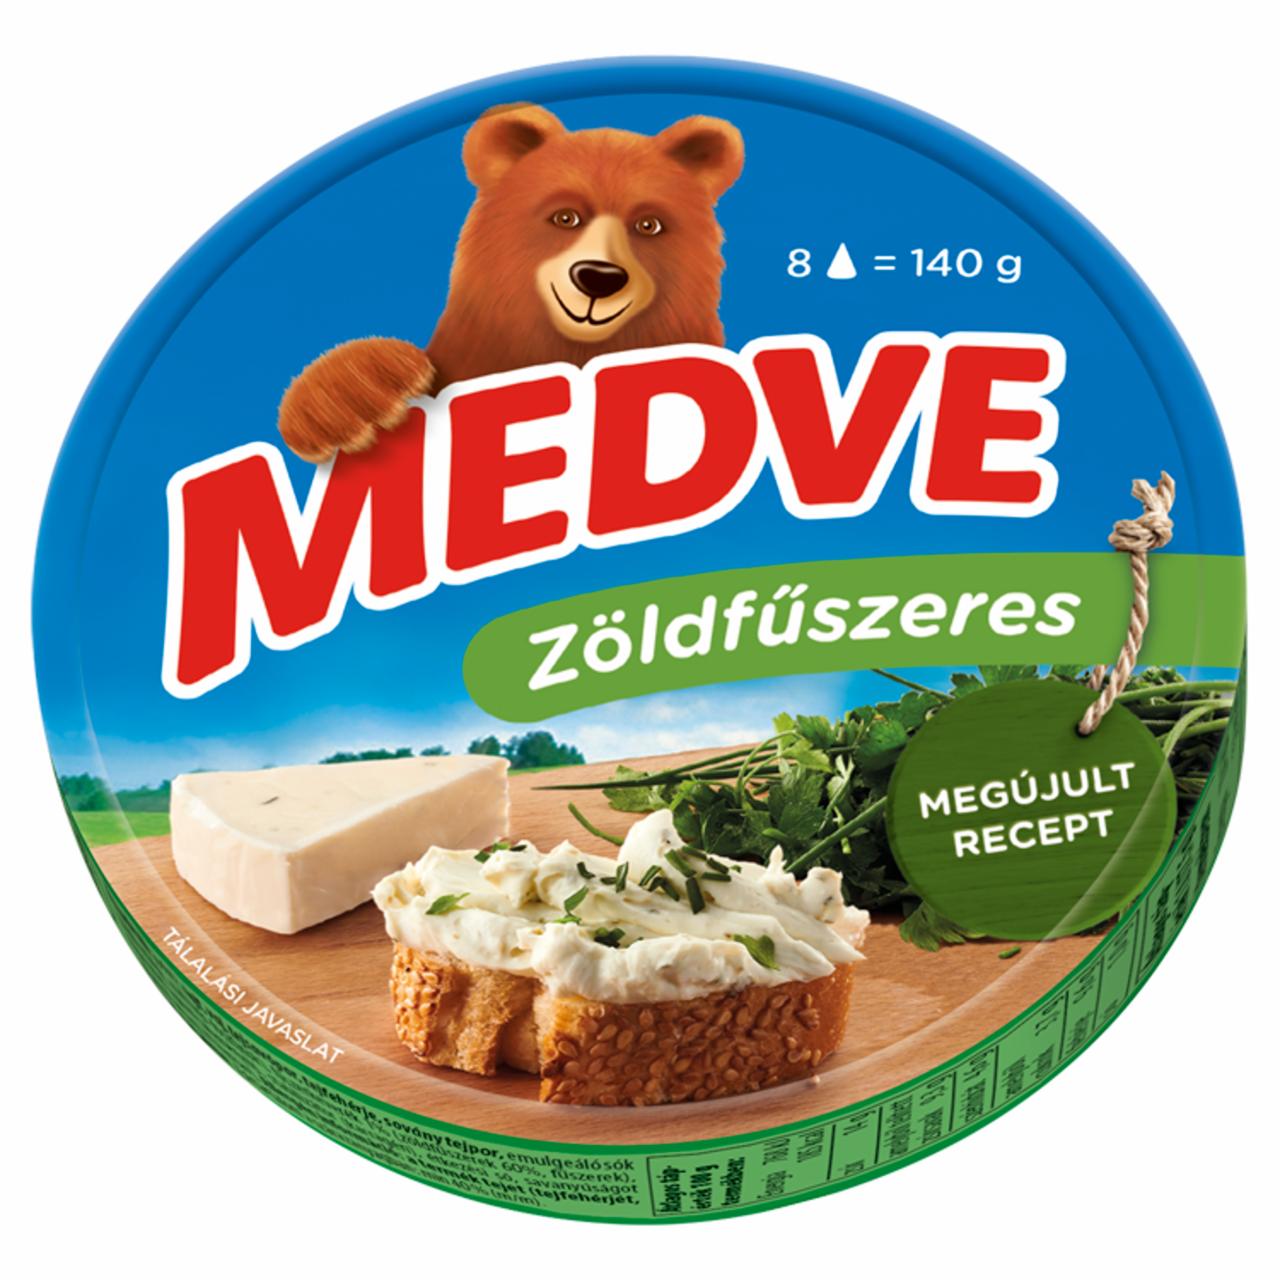 Képek - Medve zöldfűszeres kenhető, félzsíros ömlesztett sajt 8 x 17,5 g (140 g)